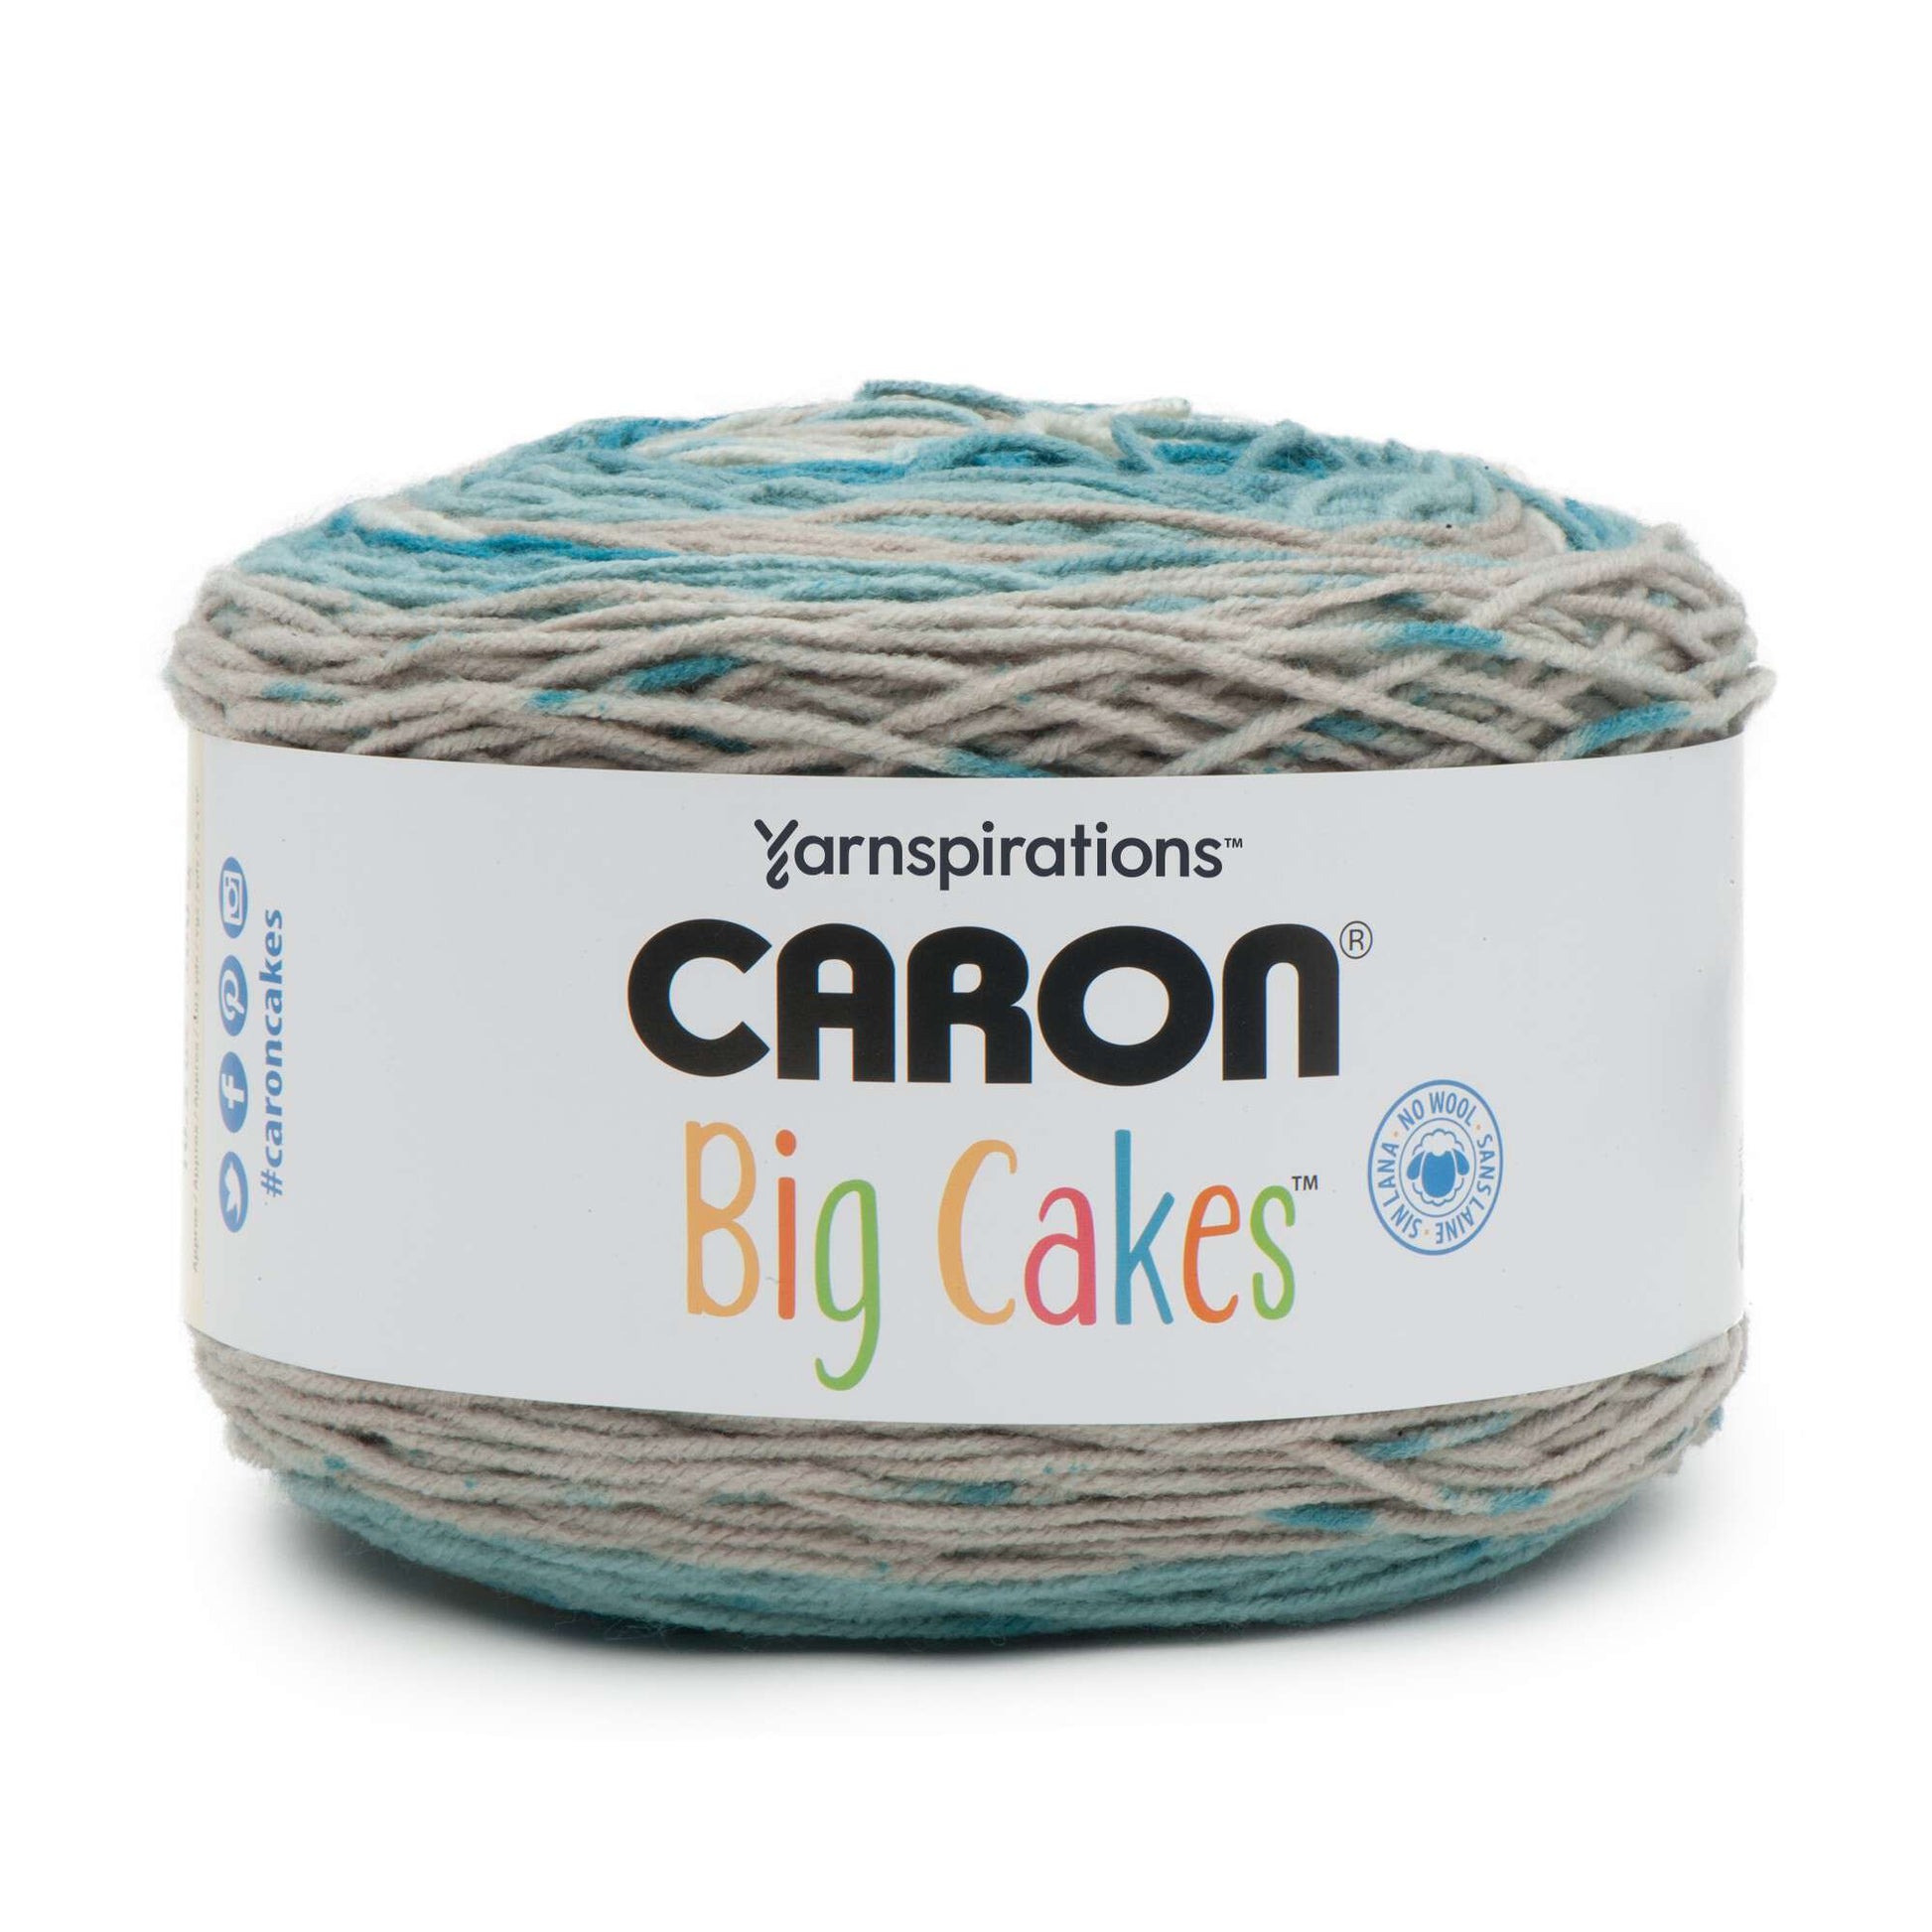 Caron Big Cakes Self Striping Yarn ~ 603 yd/551 m / 10.5oz/300 g Each  (Toffee Brickle)